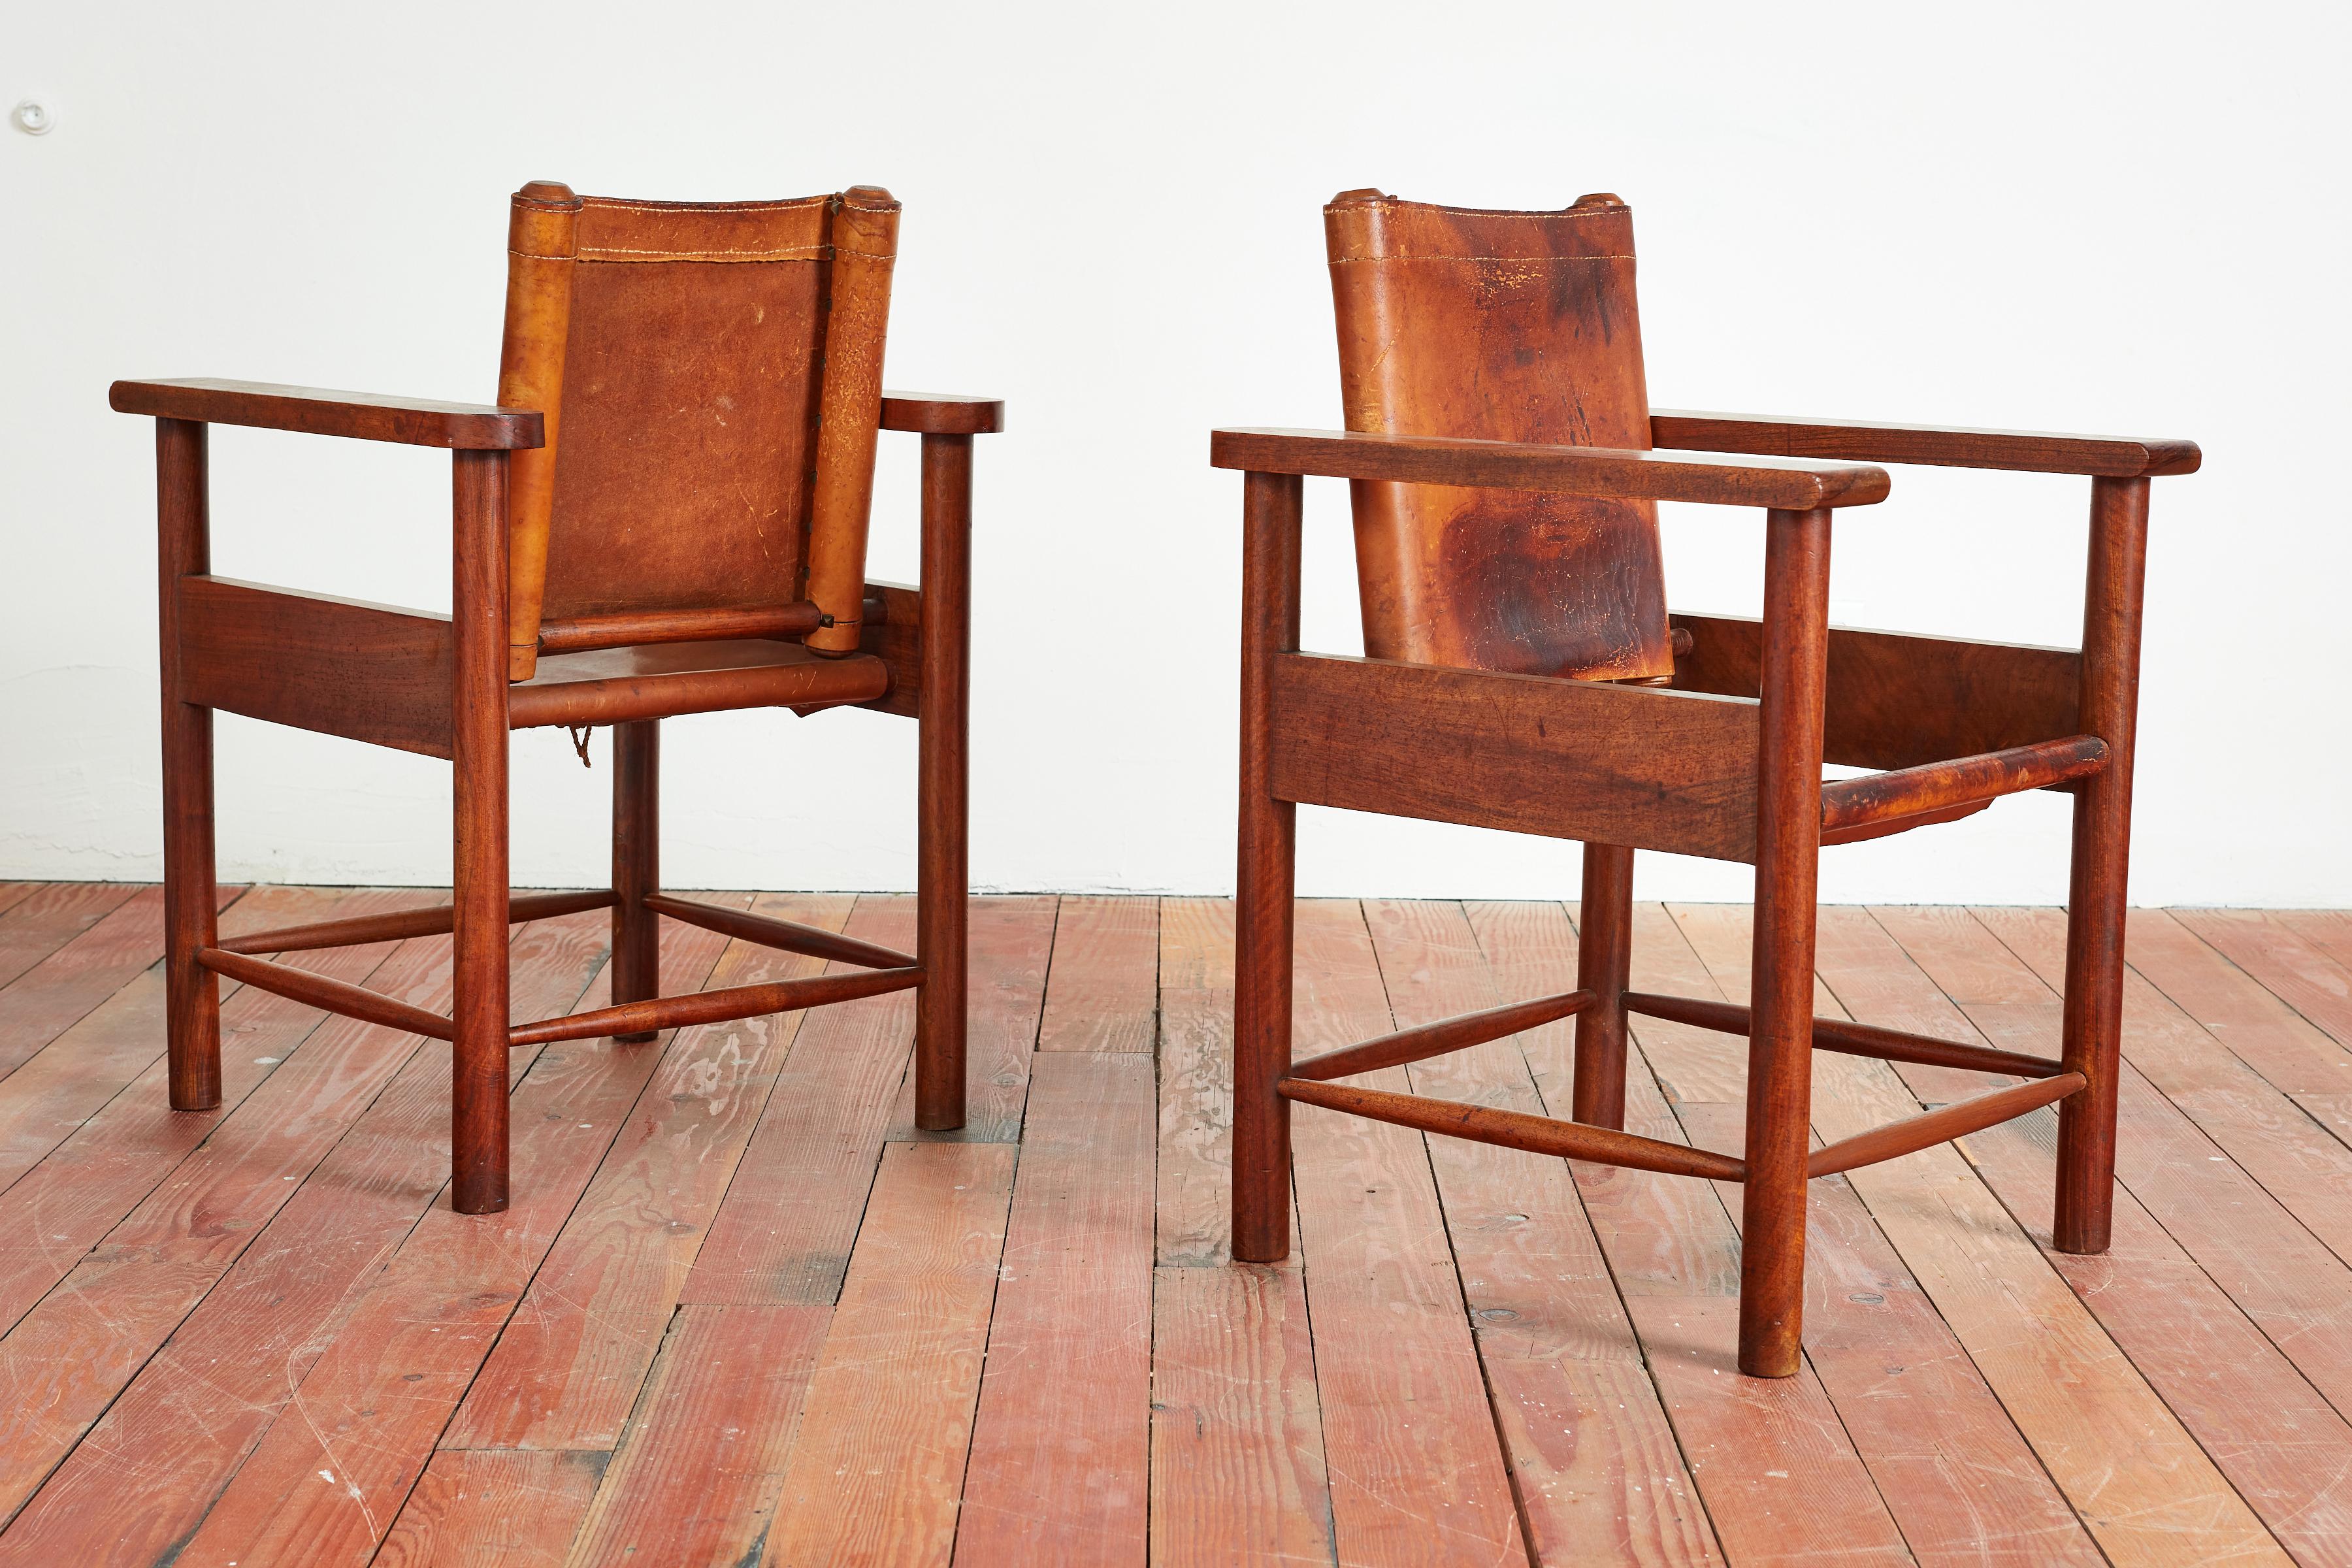 Fantastique paire de fauteuils en cuir français des années 1940 avec accoudoirs en chêne. Les détails et la construction sont ornés et le cuir et le chêne sont merveilleusement patinés.